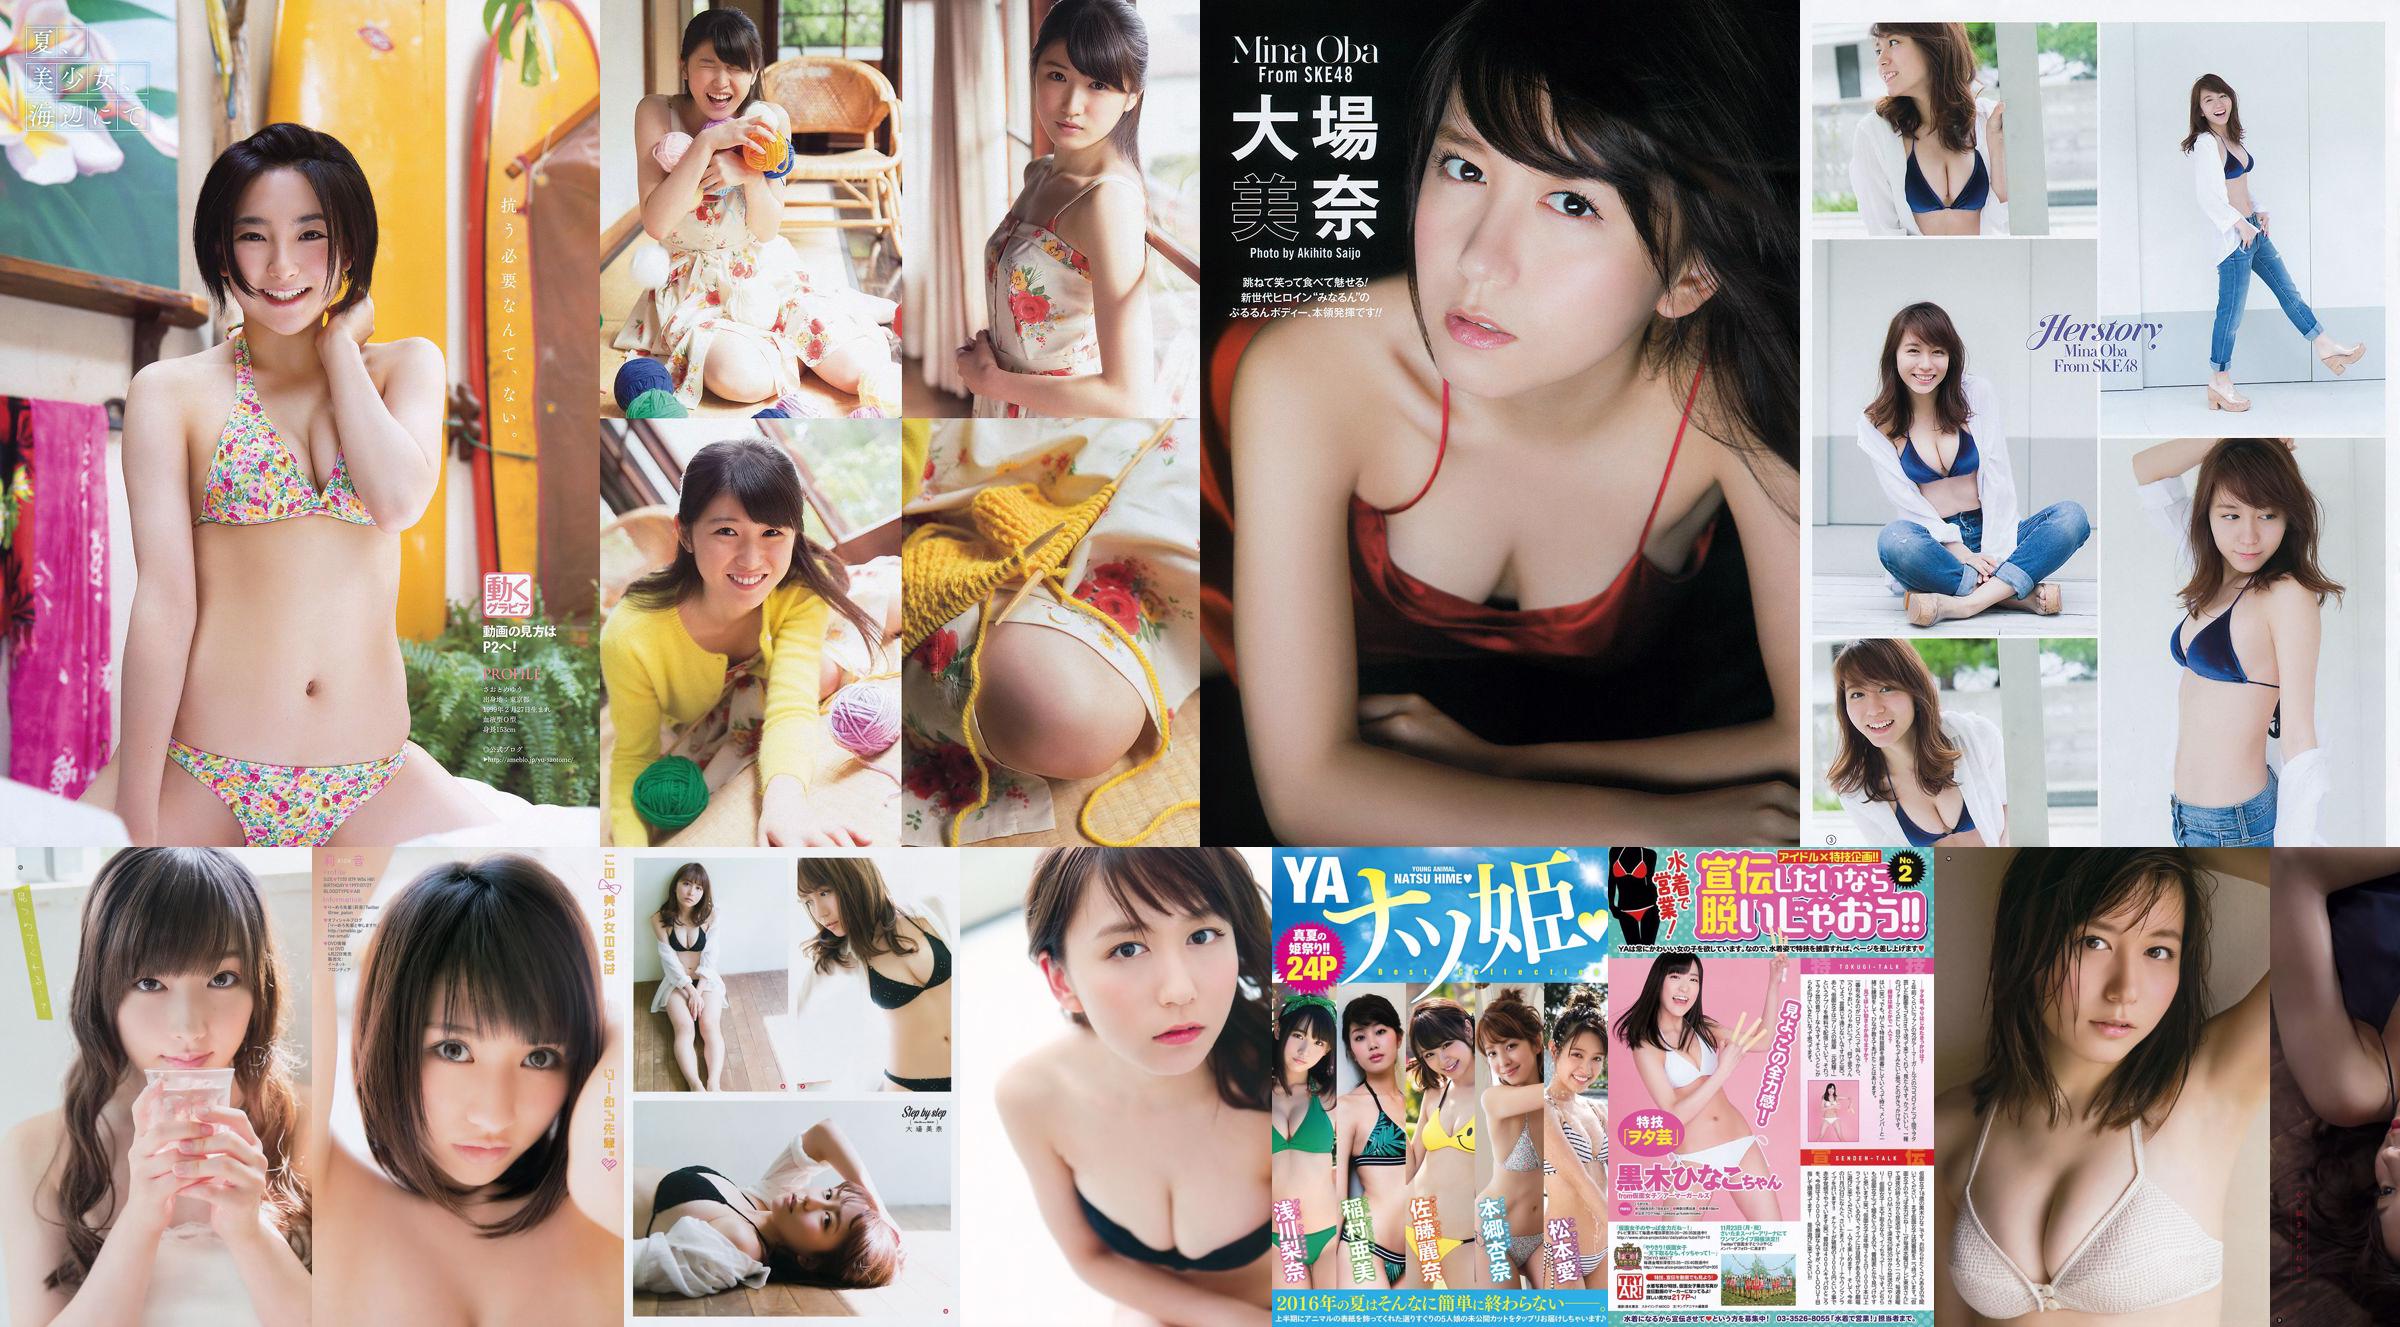 [Young Gangan] Mina Oba You Kikkawa Hitomi Yasueda 2015 No.10 Photograph No.615337 Pagina 5